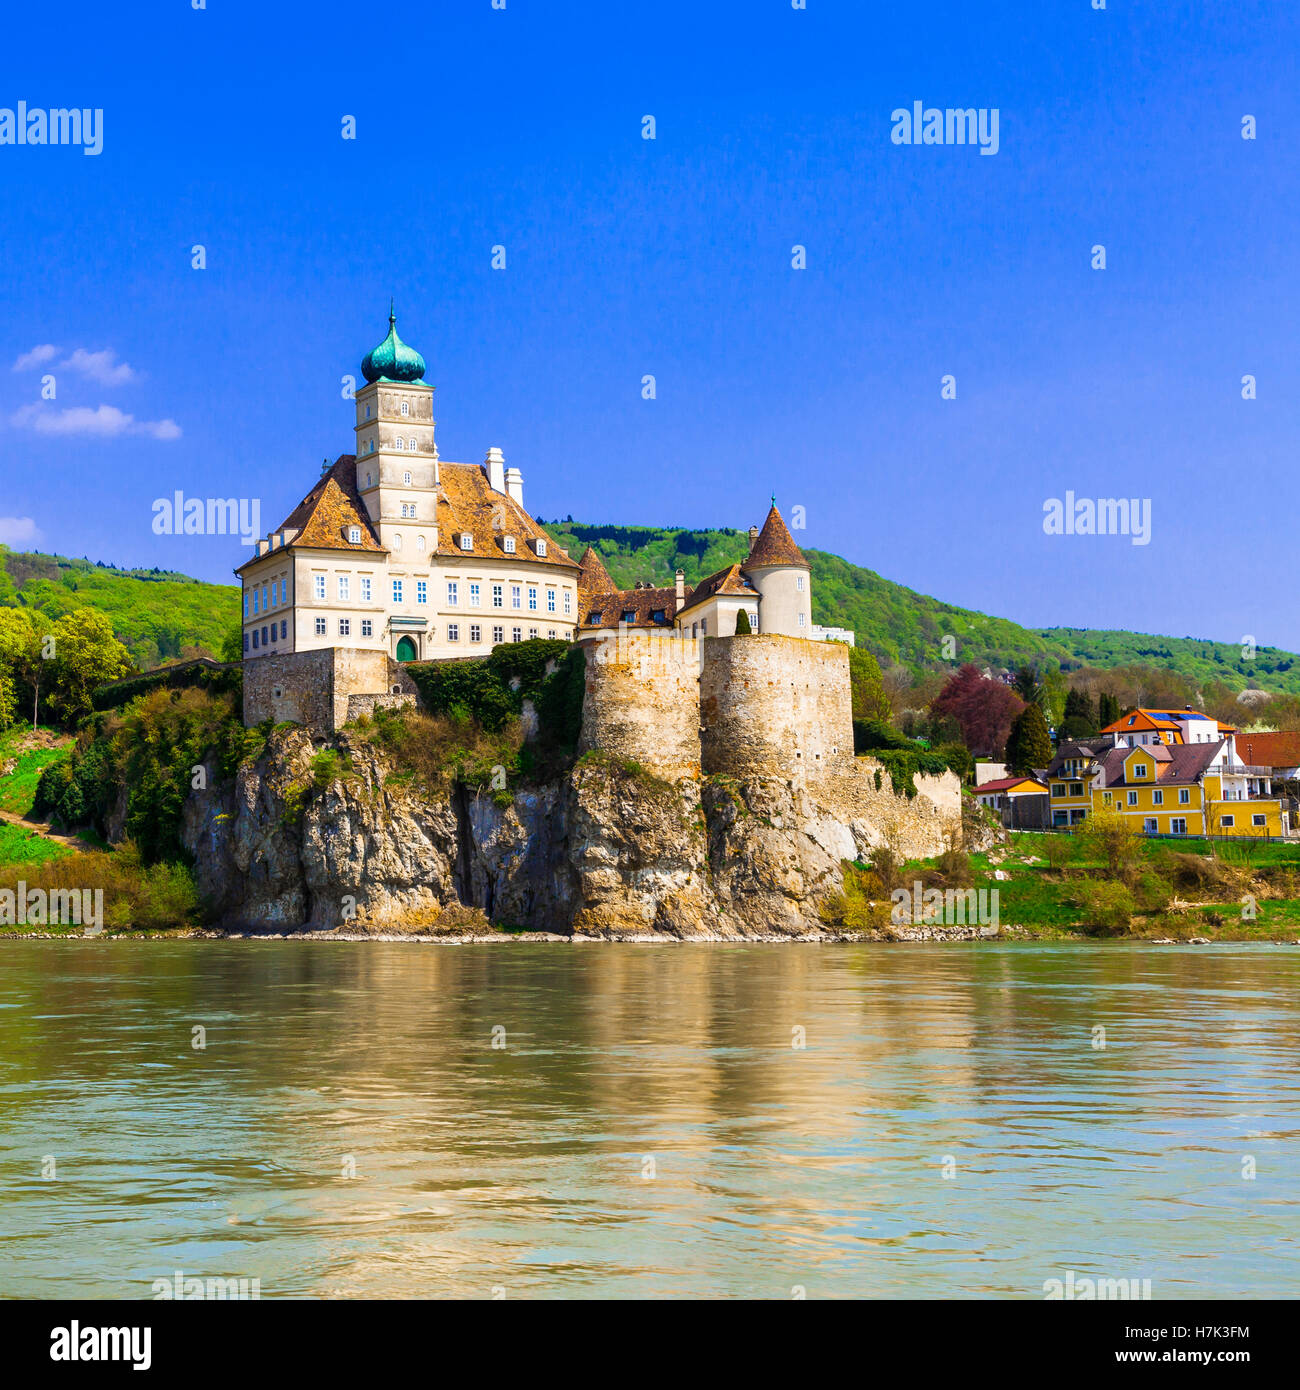 Schöne schonbuhel Schloss, Ansicht mit alten Festung, die Kirche und die Donau, Österreich. Stockfoto